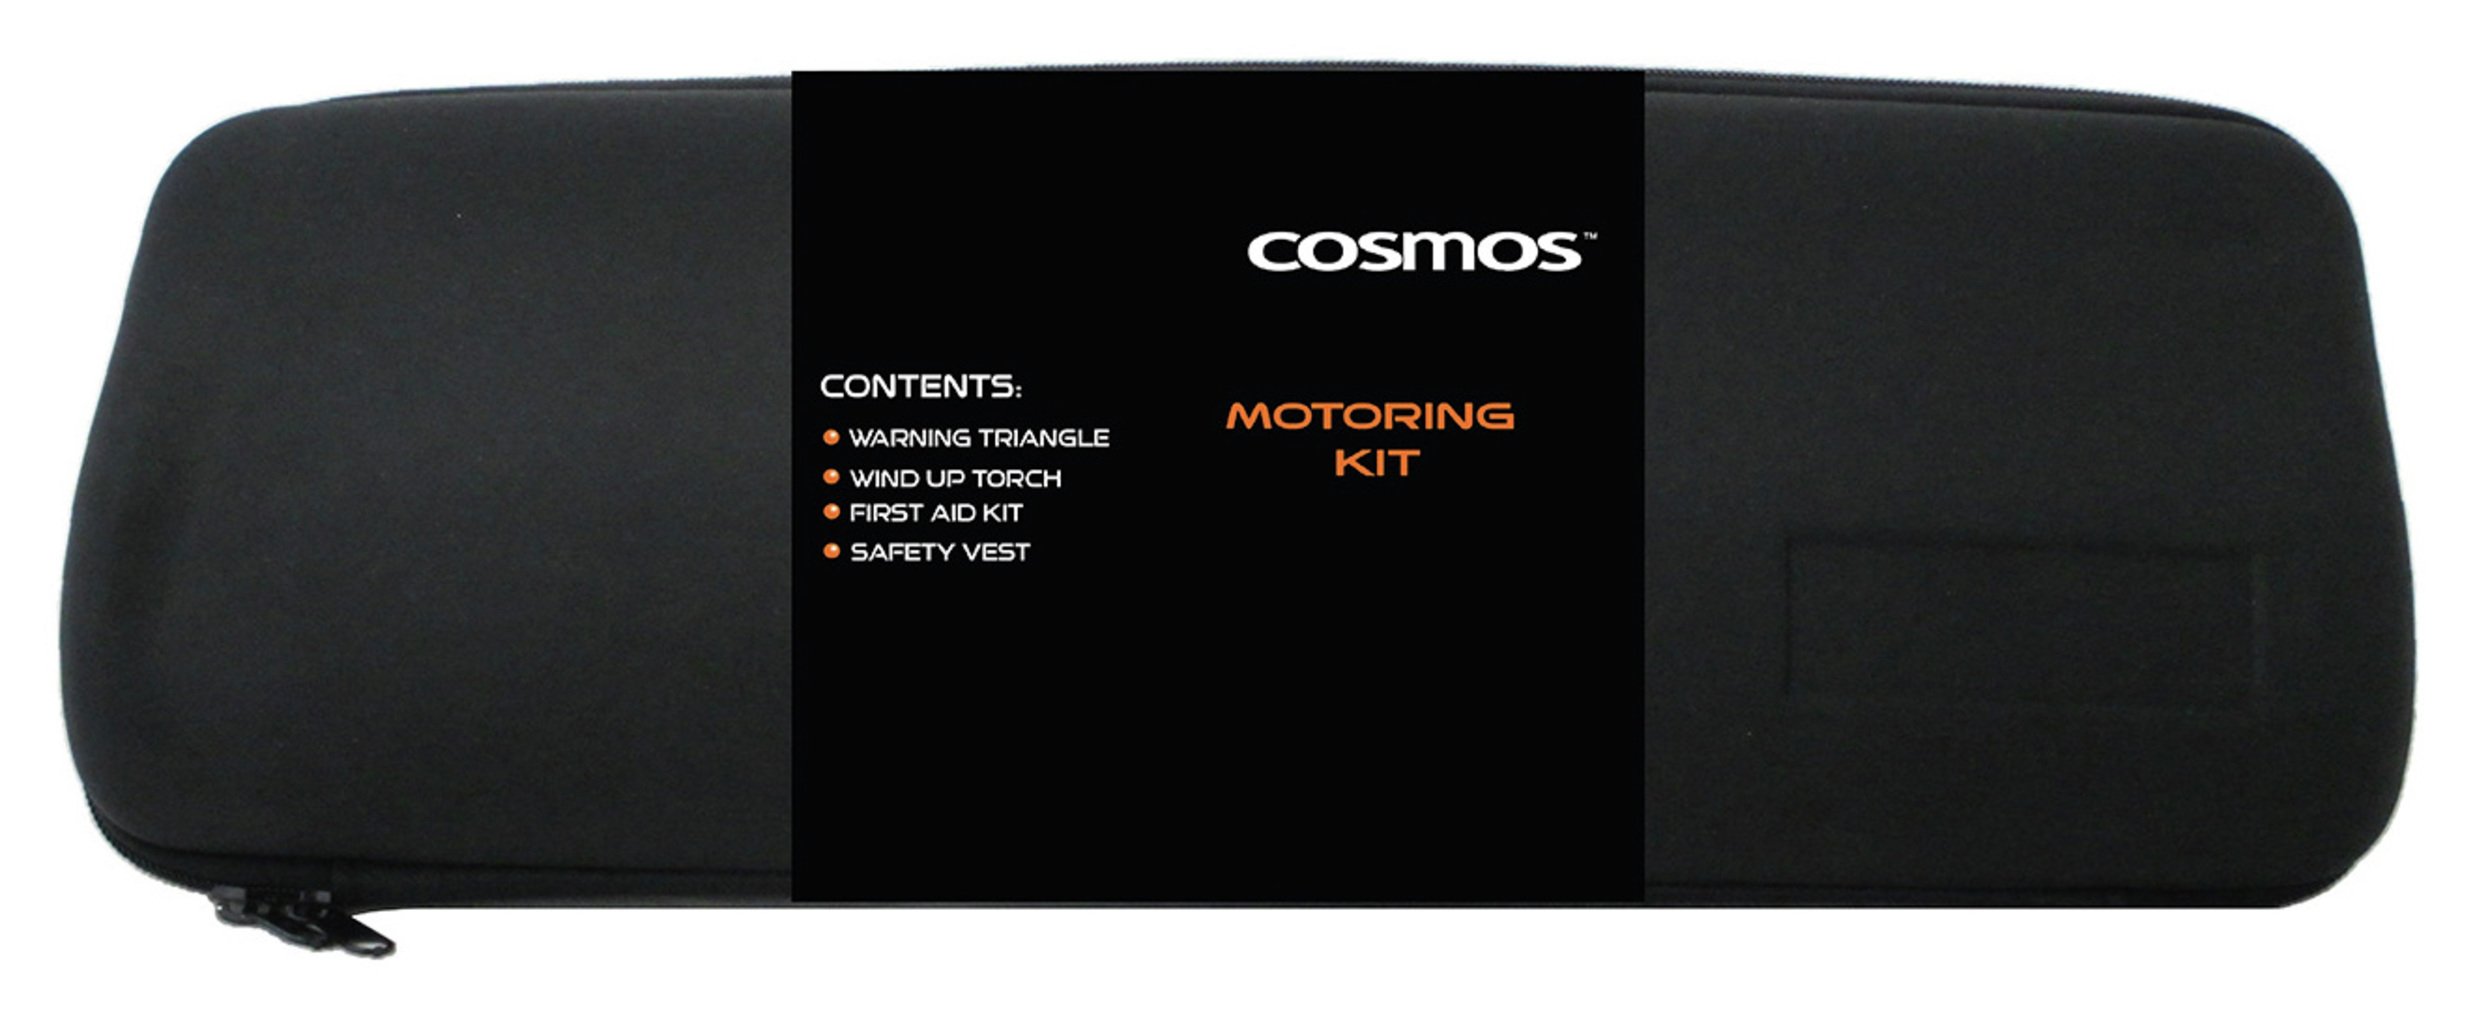 Cosmos Motoring Kit